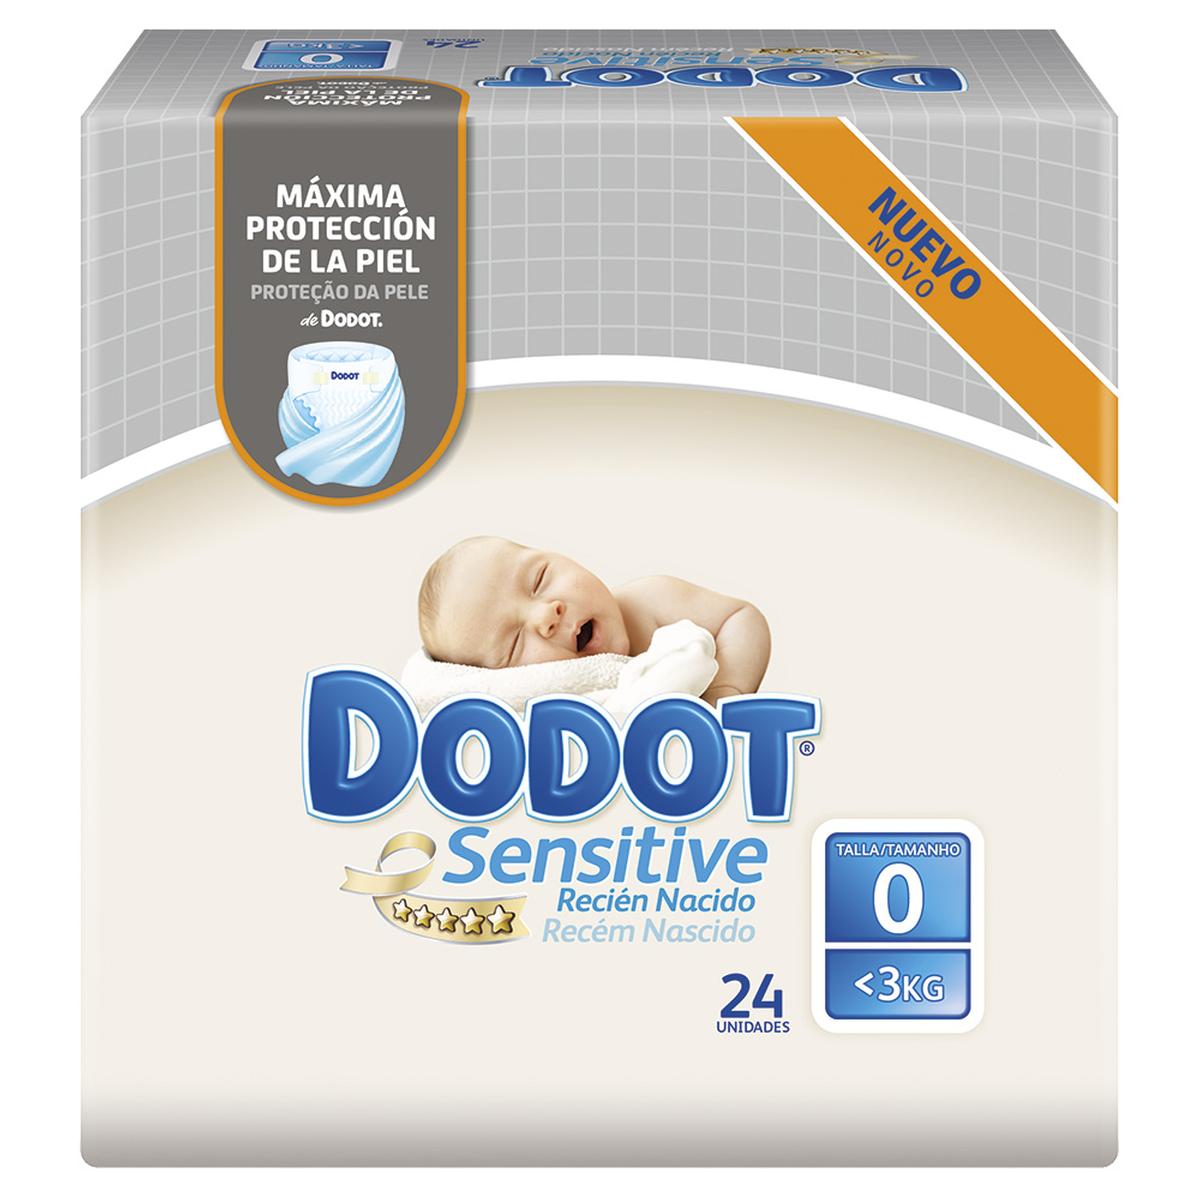 Dodot - Fraldas Sensitive Recém Nascido T0 (1.5-2.5 kg) 24 unidades., Recém-nascido